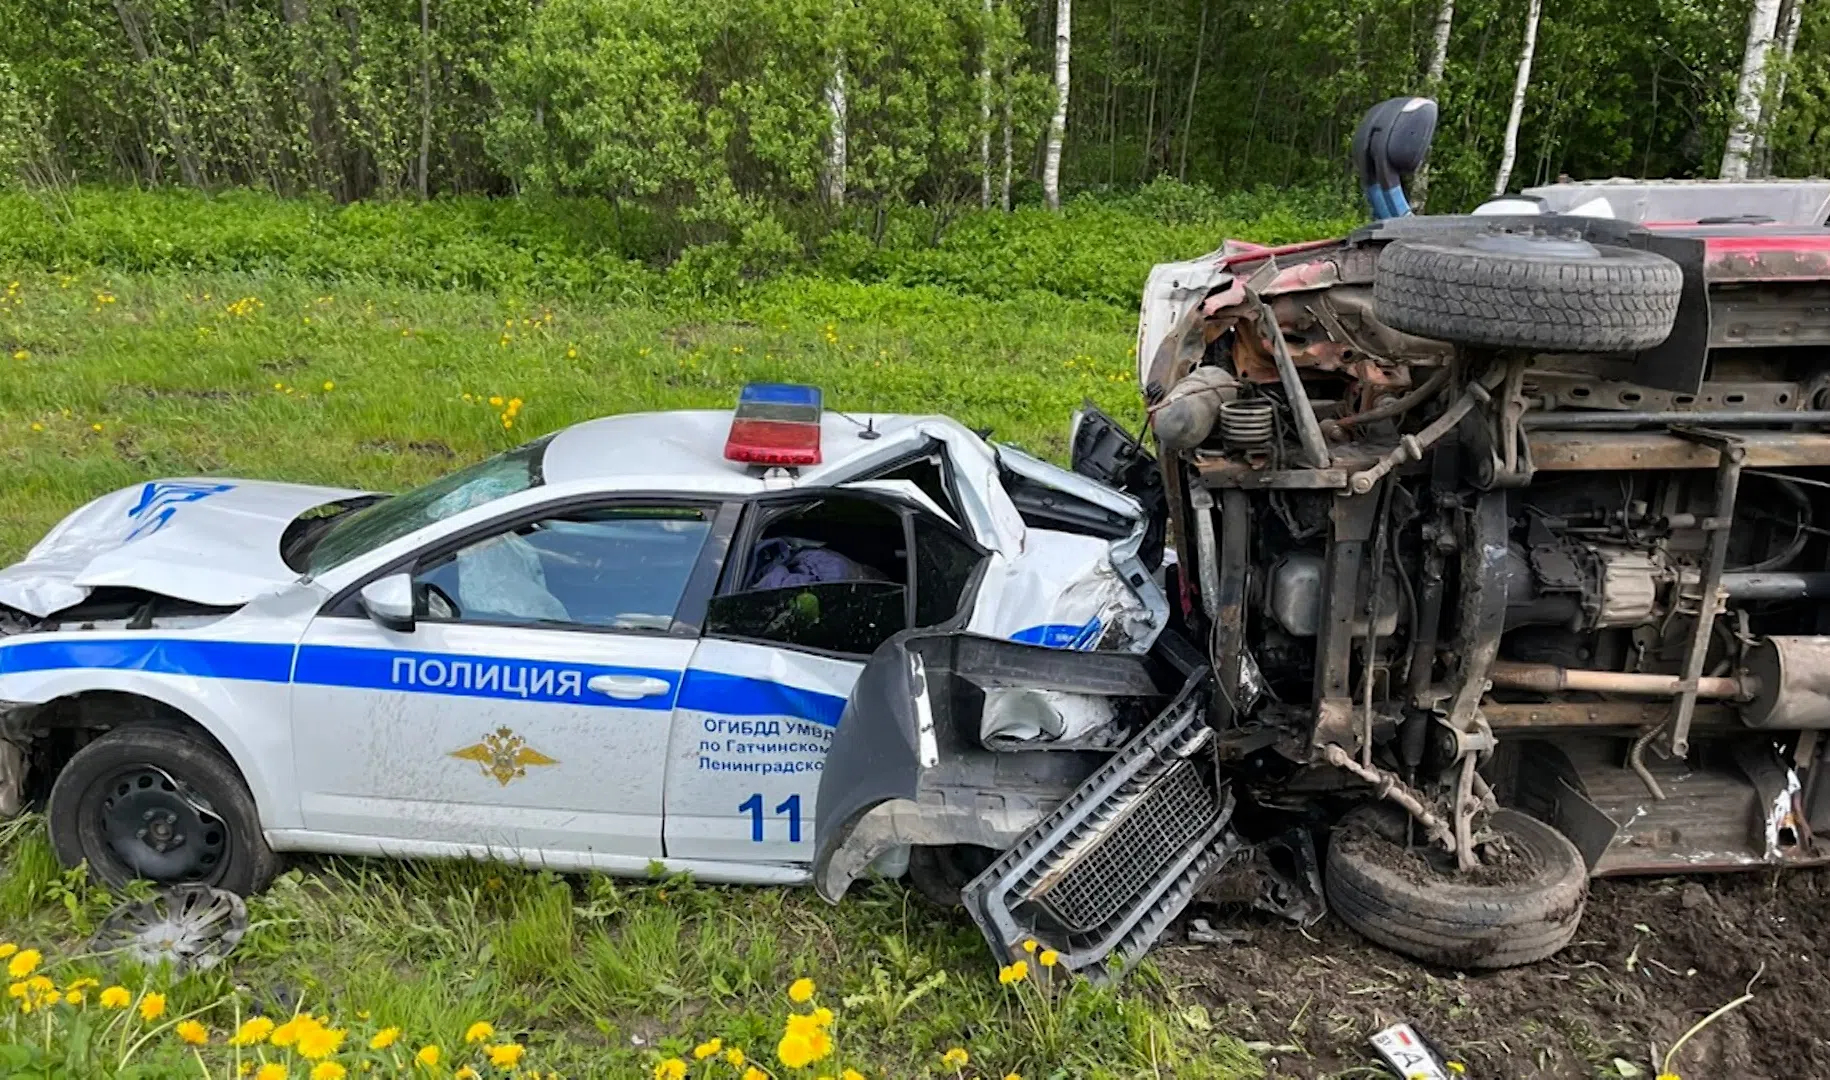 Полицейские машины аварии. Машина ДПС перевернулась. Авария в Ленинградской области.